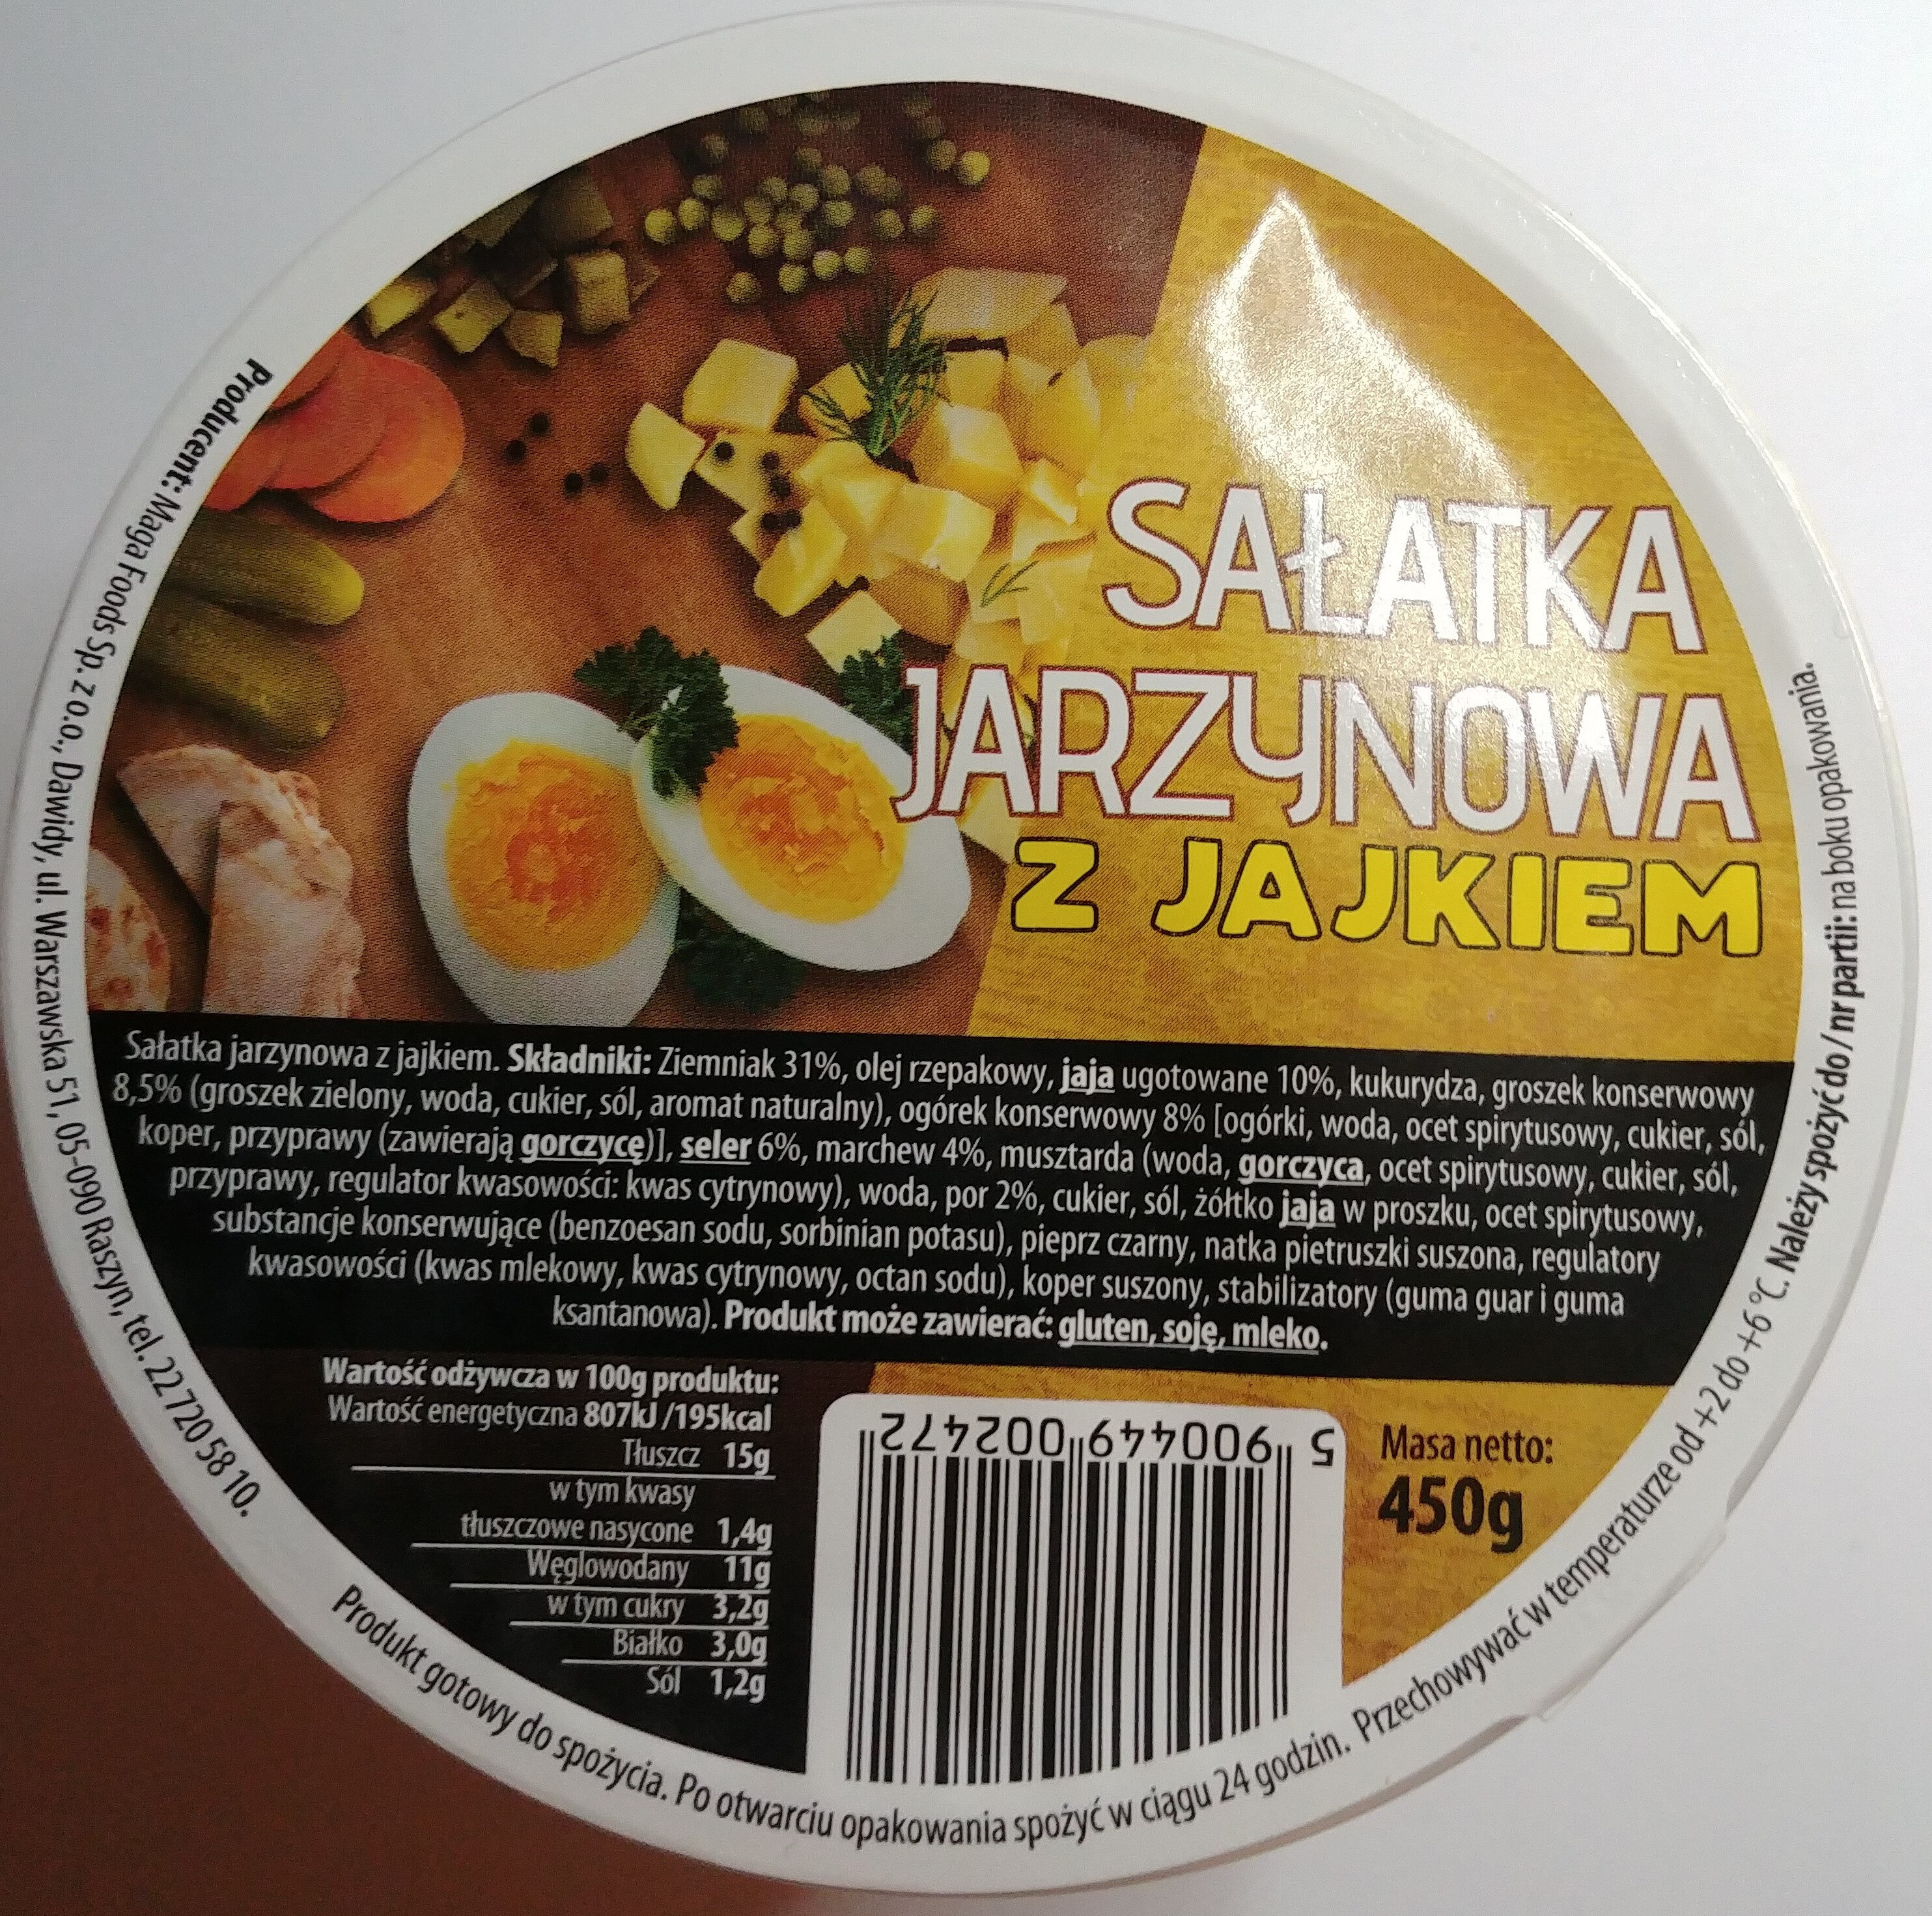 Sałatka jarzynowa z jajkiem - Product - pl